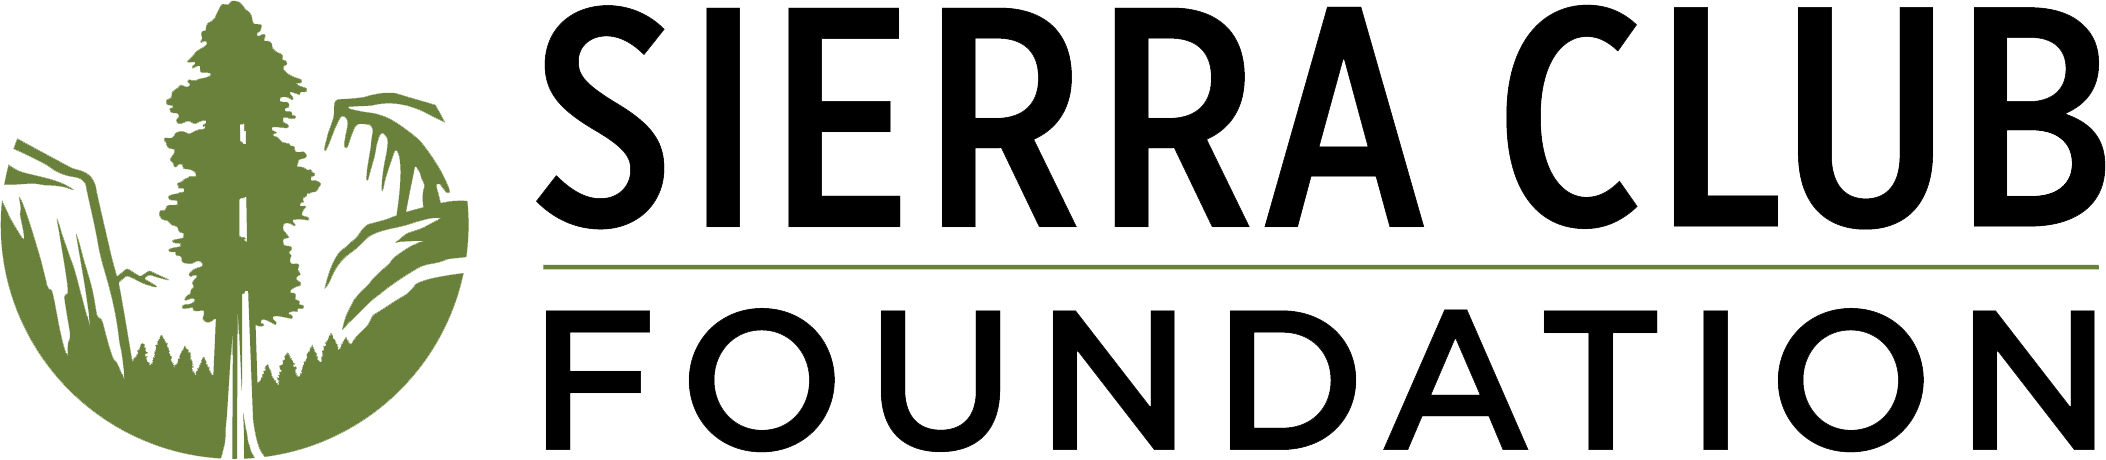 Sierra Club Foundation logo